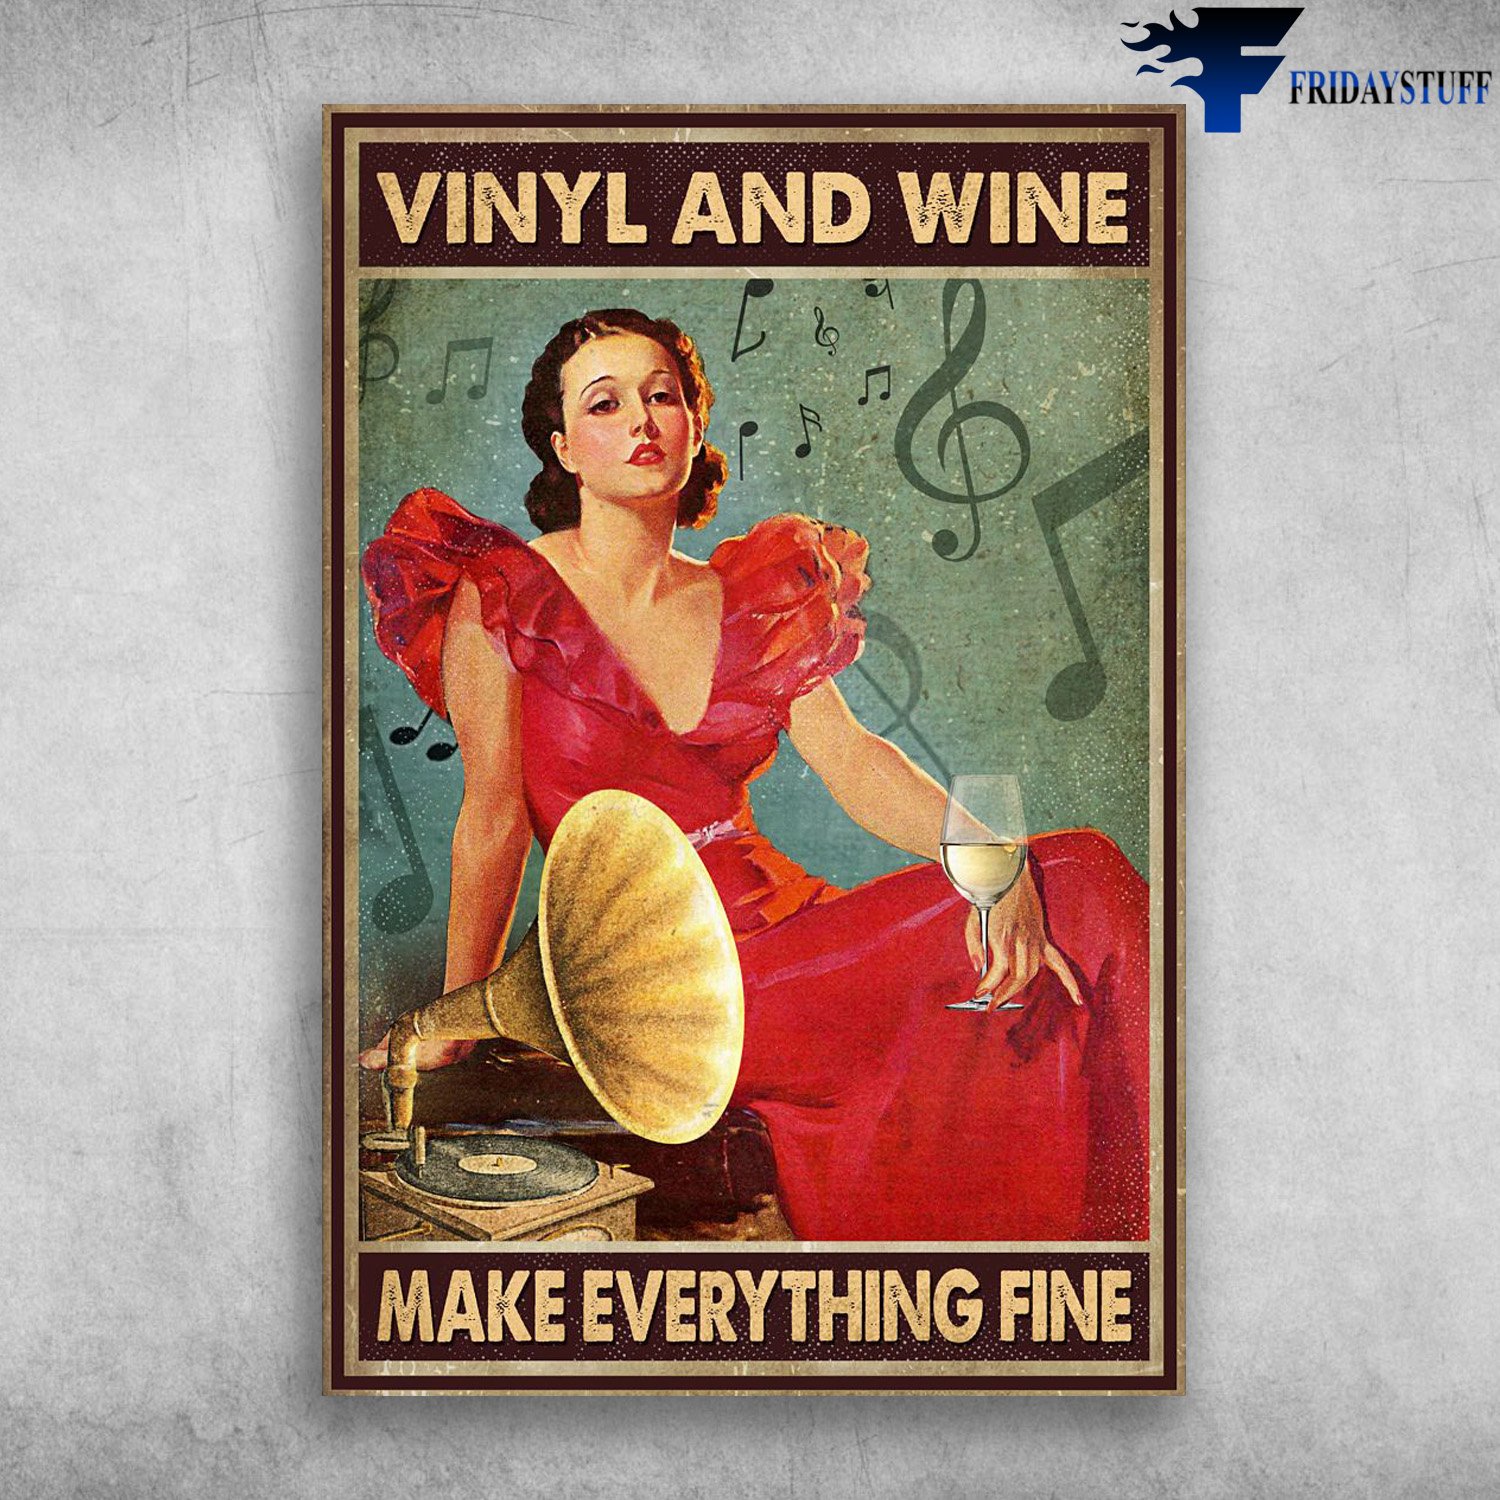 Girl Loves Vinyl And Wine - Make Everything Fine